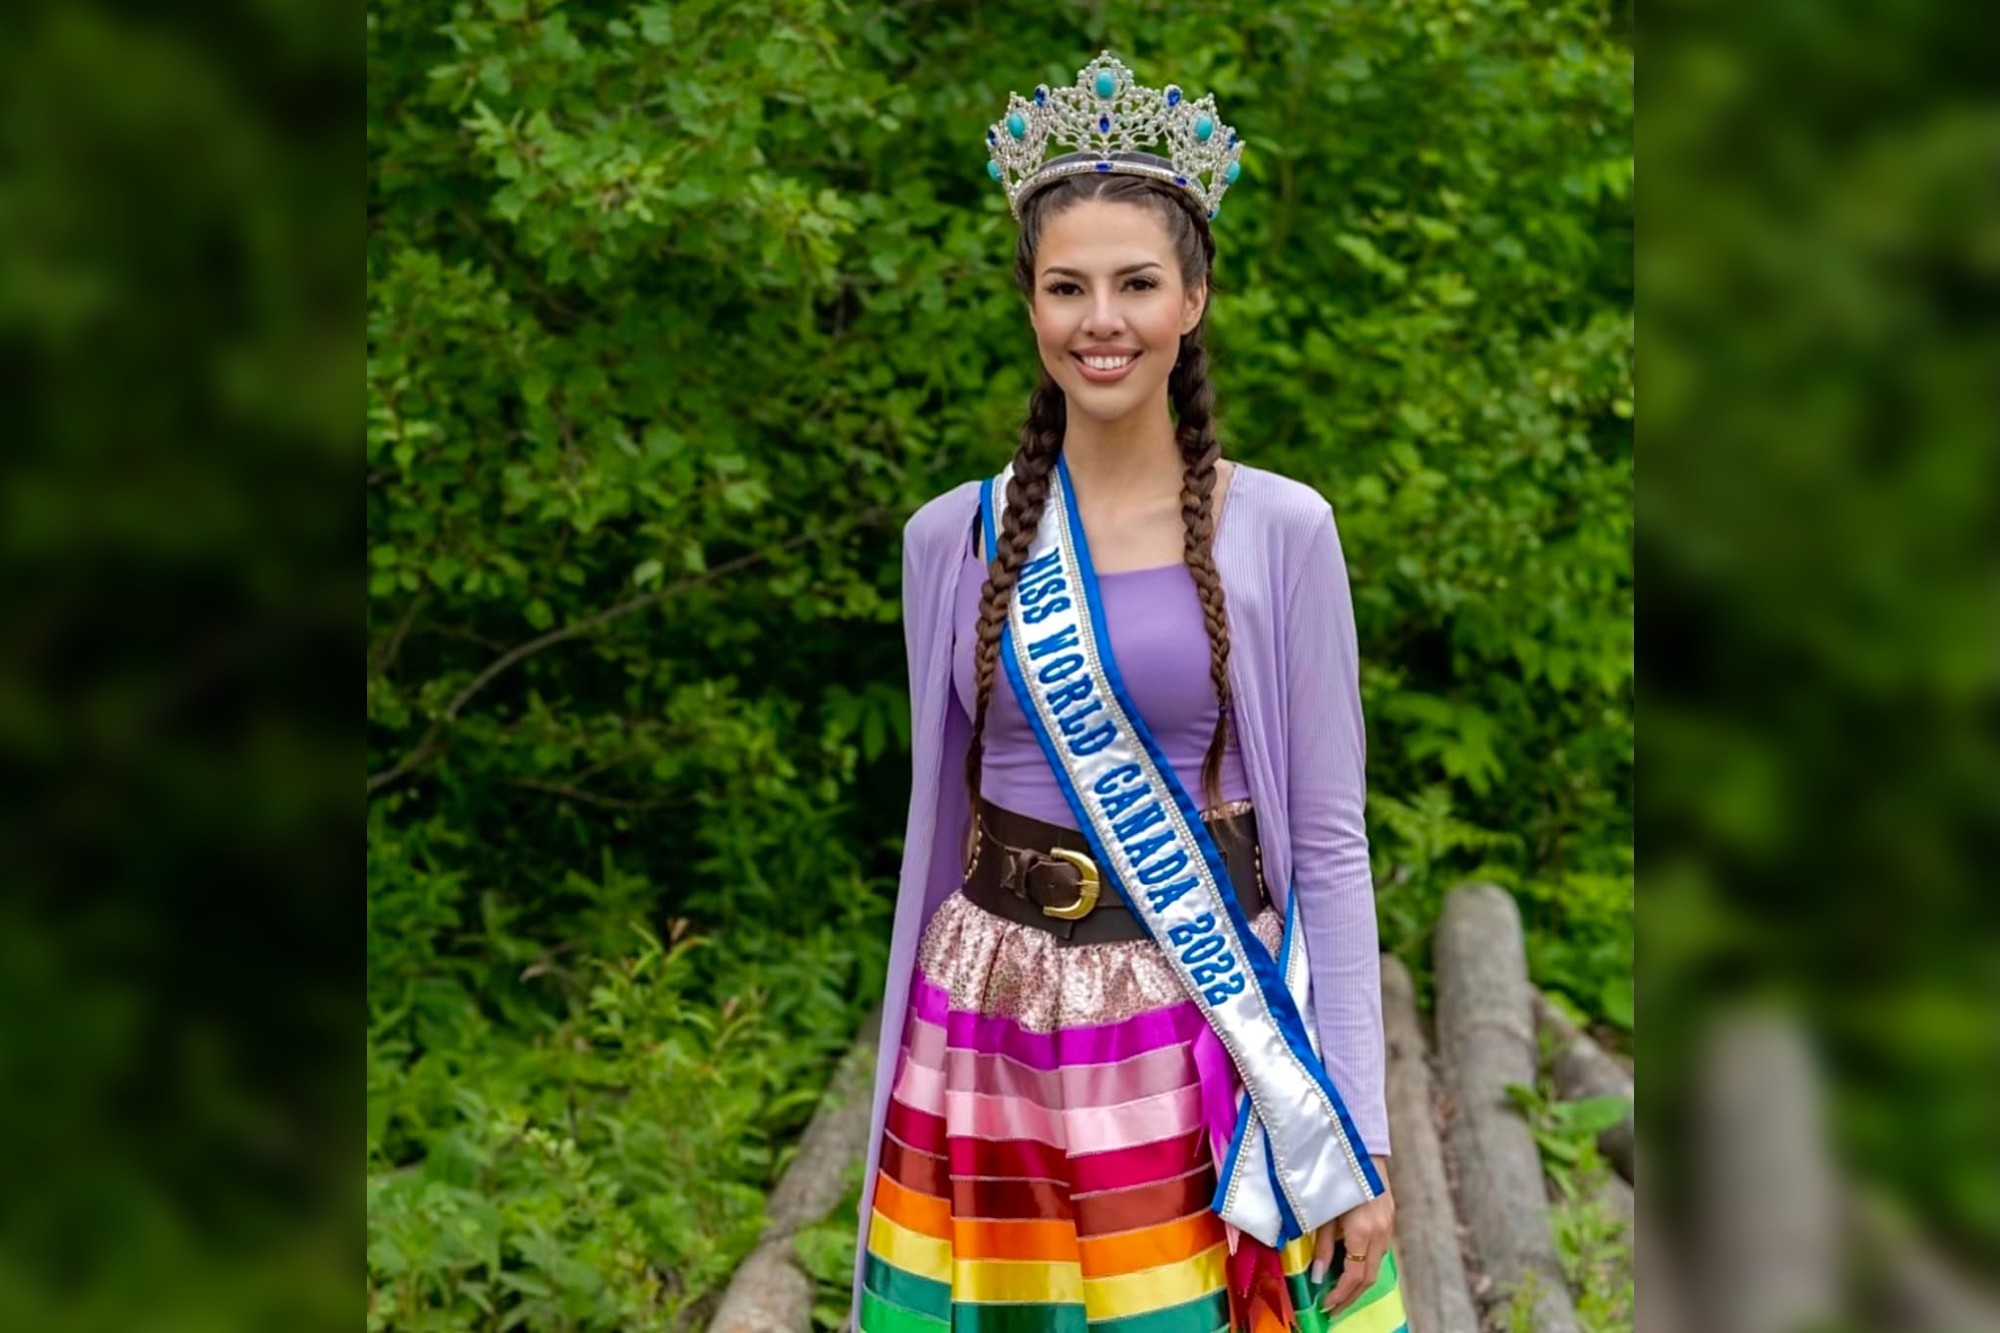 Miss World Canada's hidden talent? Sewing ribbon skirts - Innisfil News